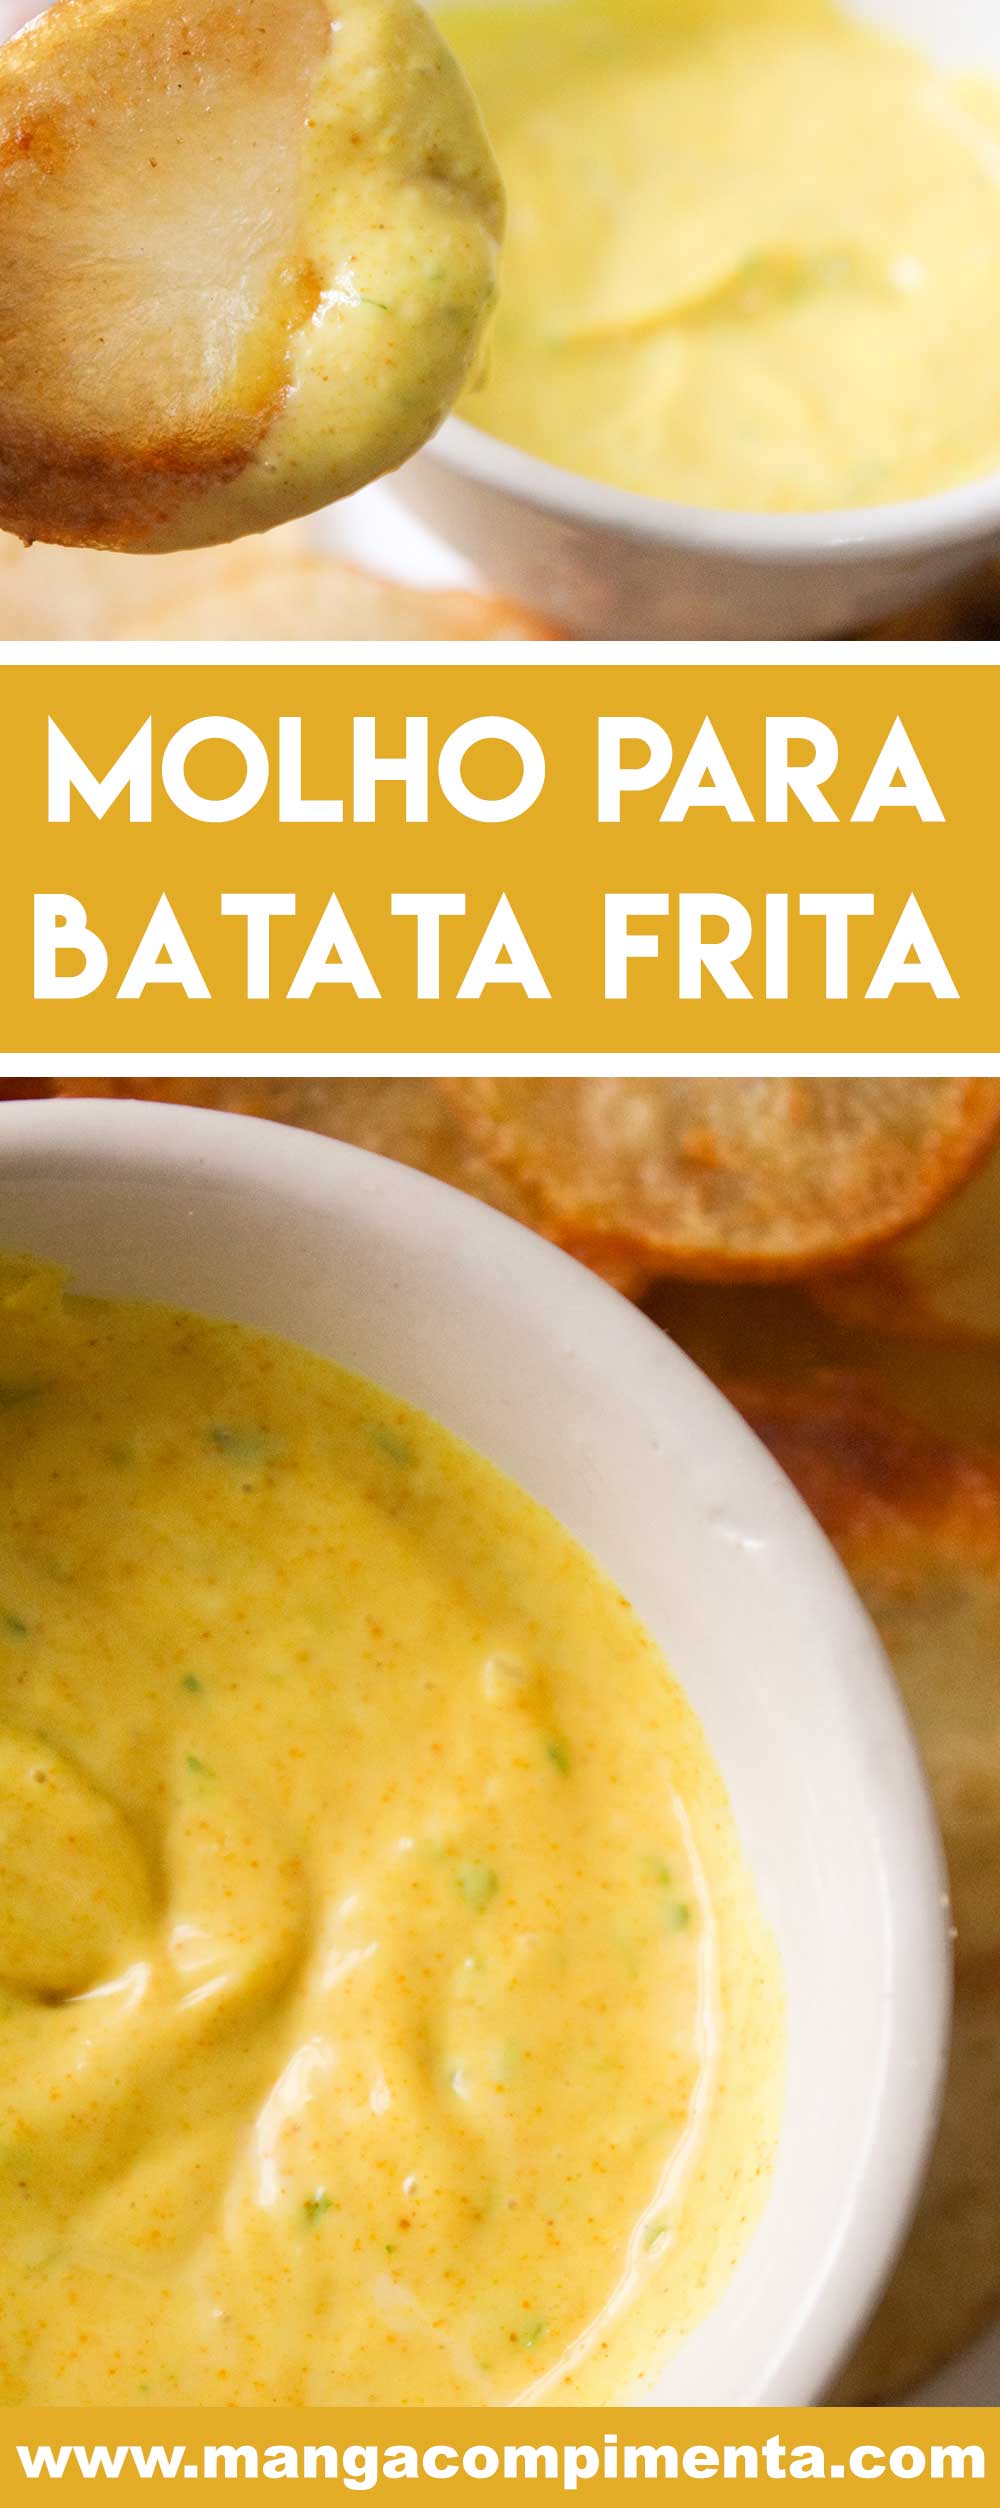 Receita de Molho para Batata Frita - chame os amigos, prepare as batatas fritas e sirva com uma bebida bem gelada!